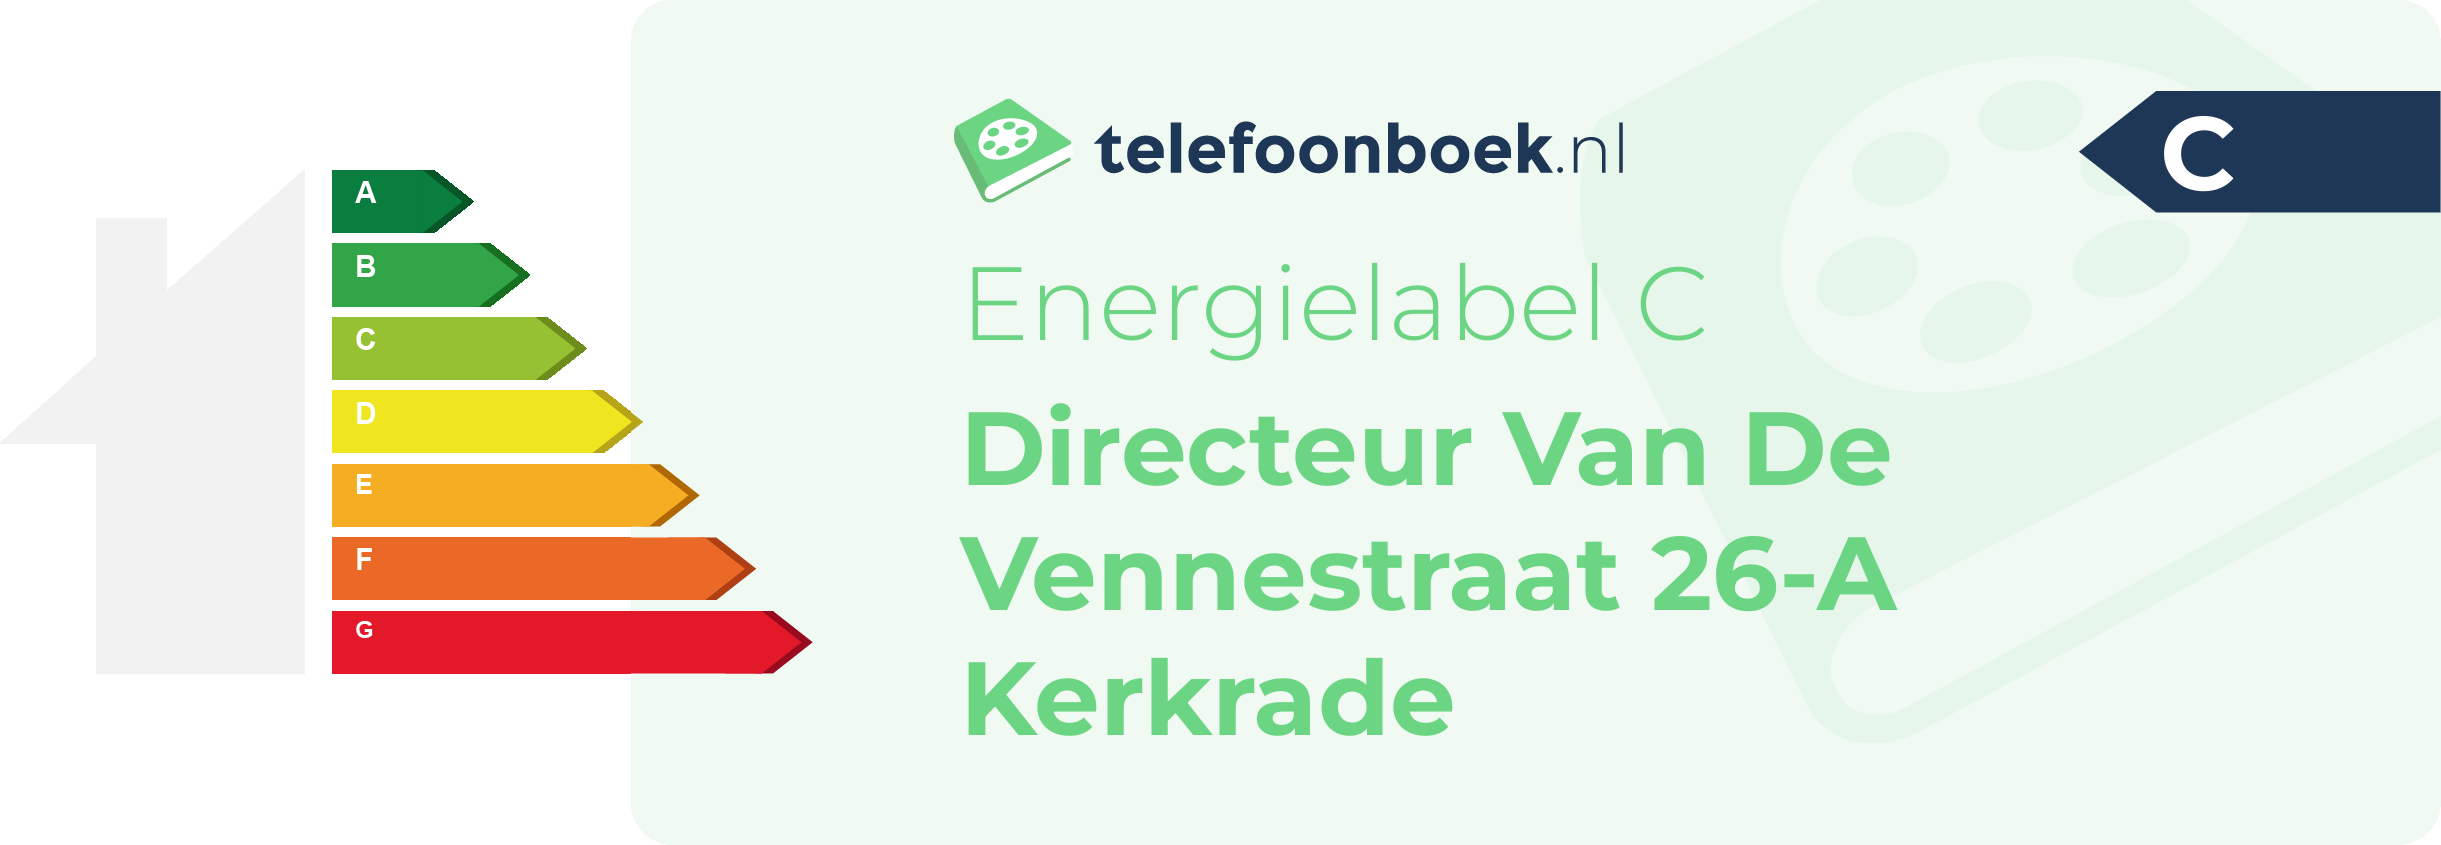 Energielabel Directeur Van De Vennestraat 26-A Kerkrade